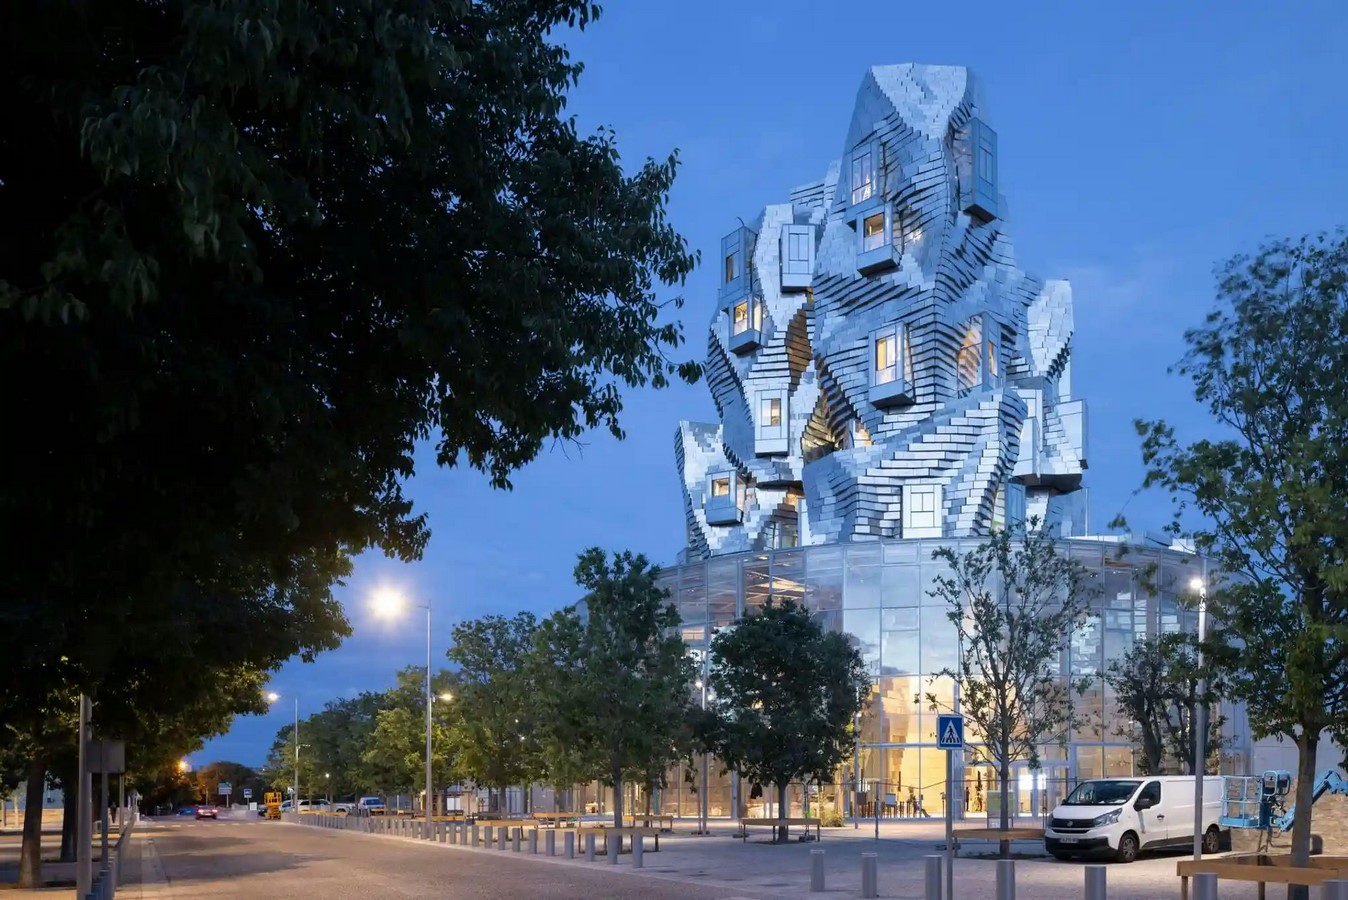 弗兰克·盖里:创造雕塑建筑的解构主义建筑师